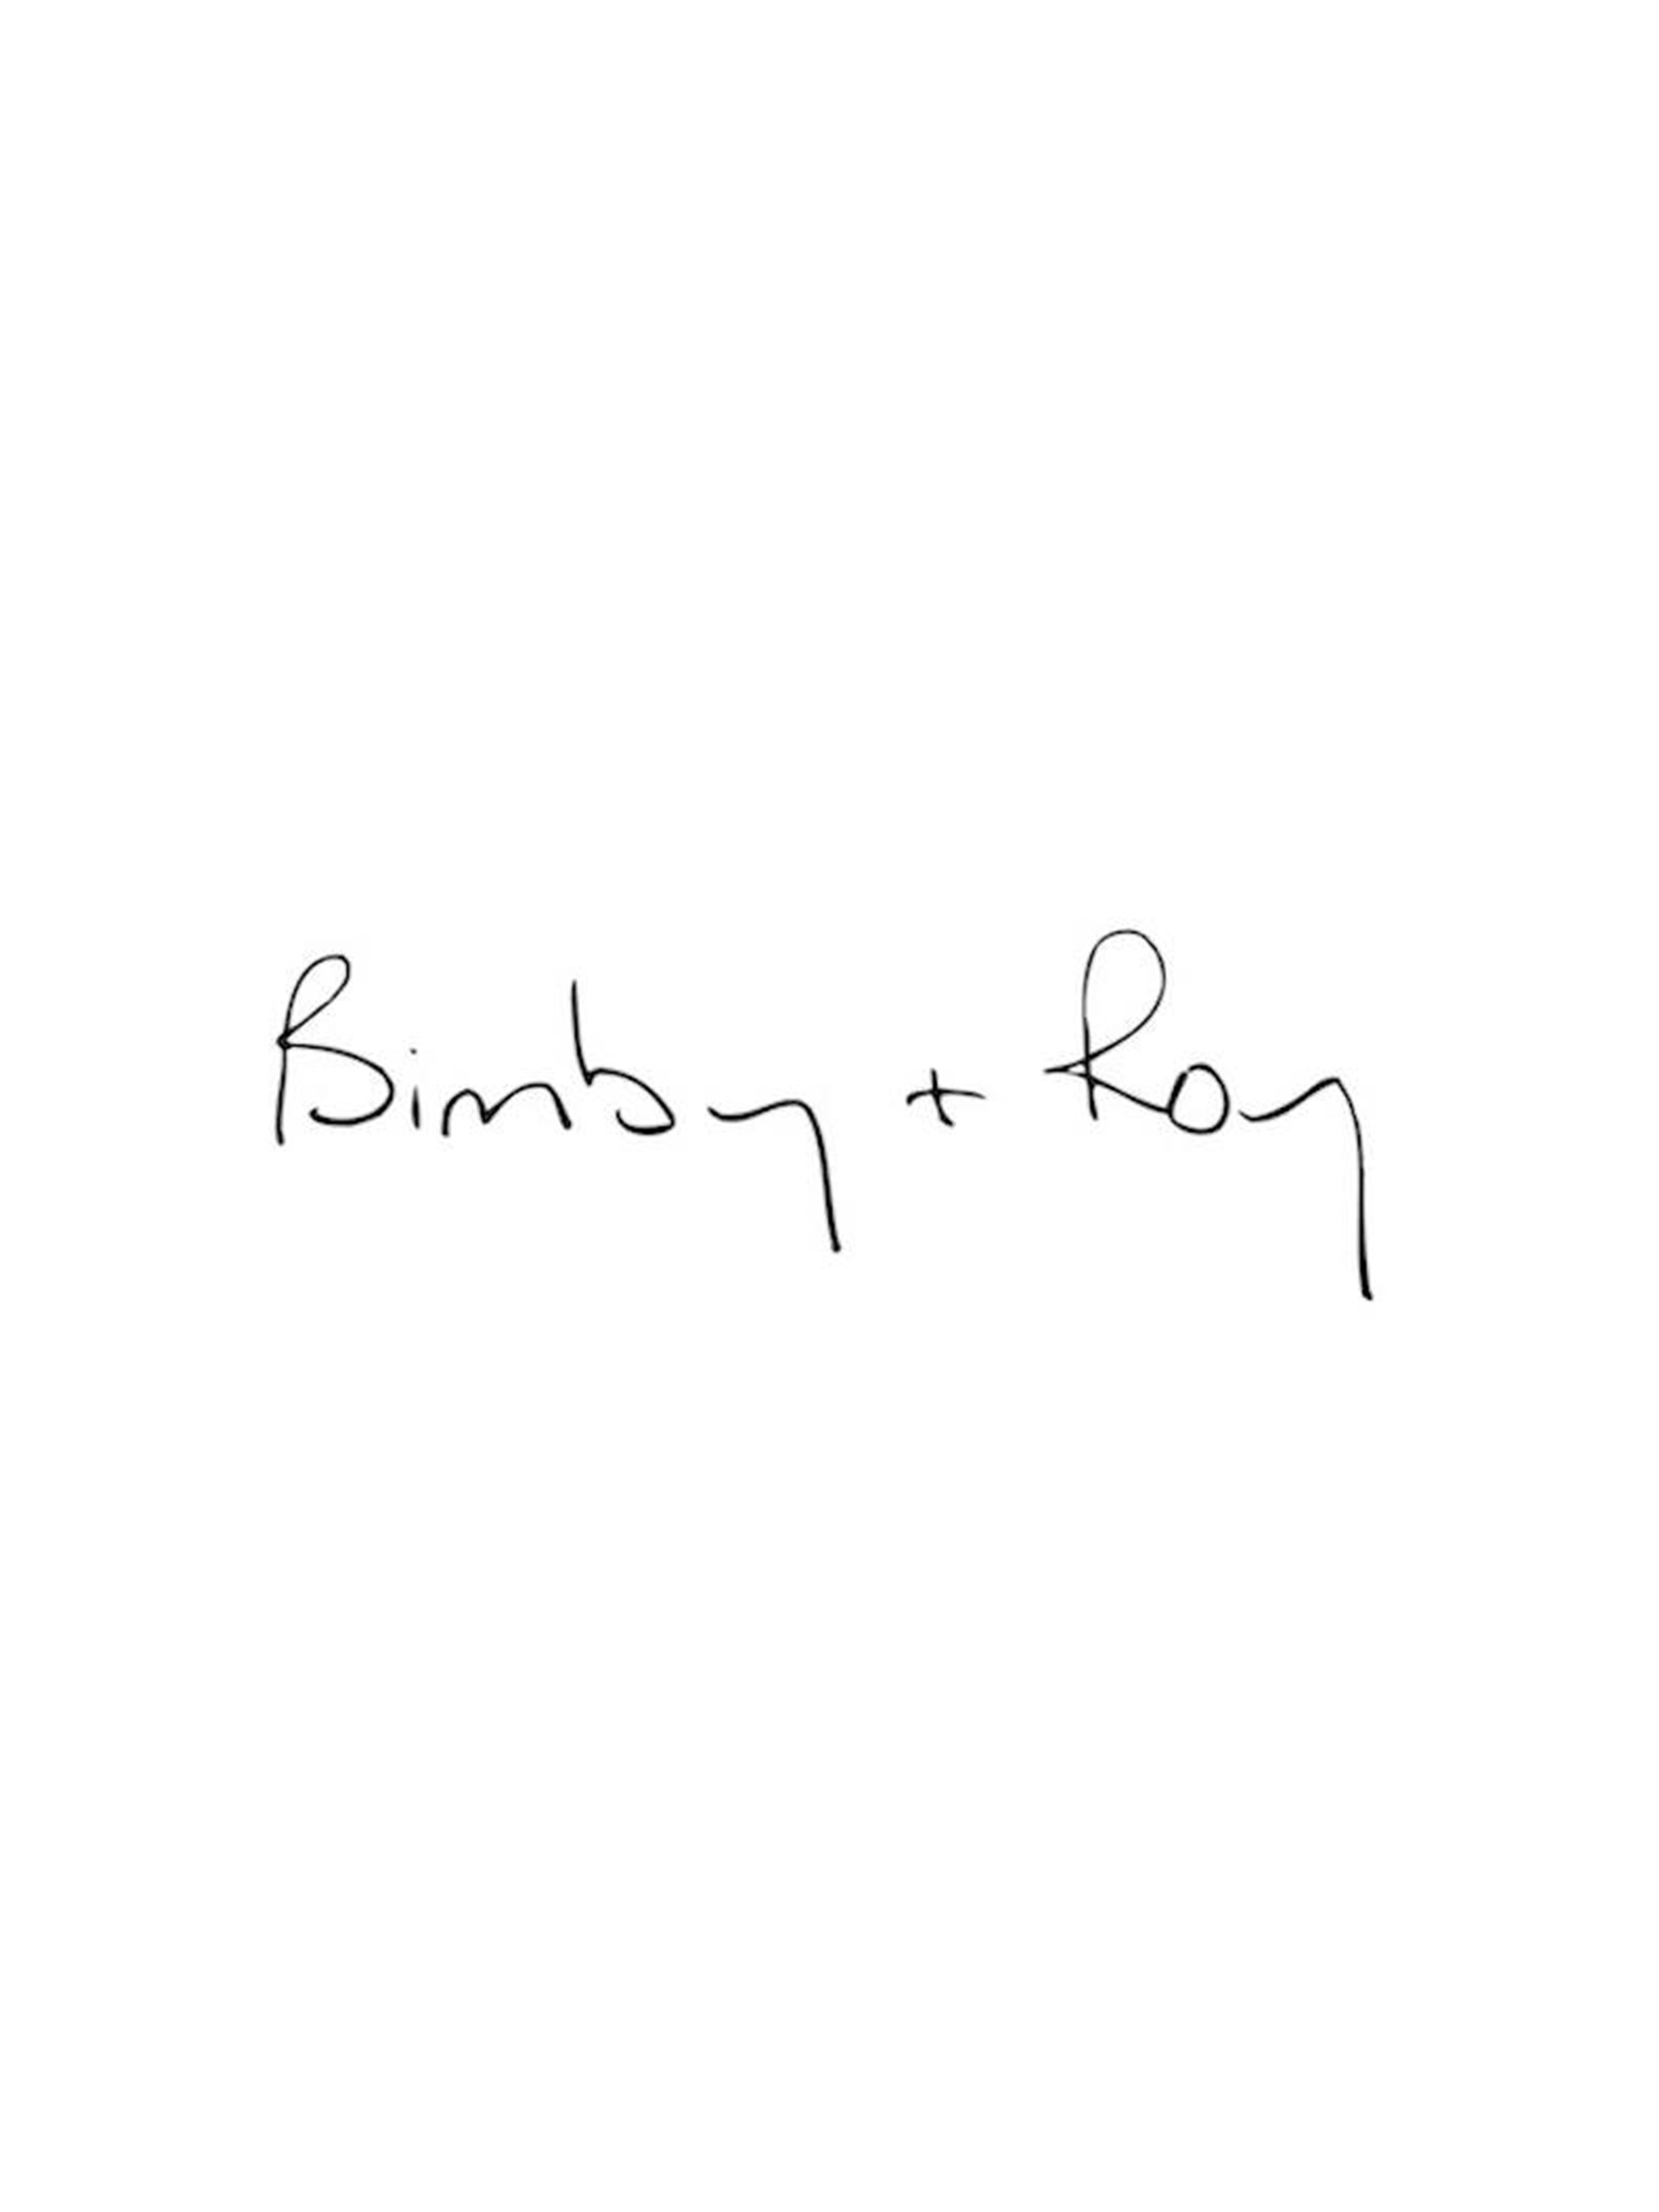 BIMBY + ROY